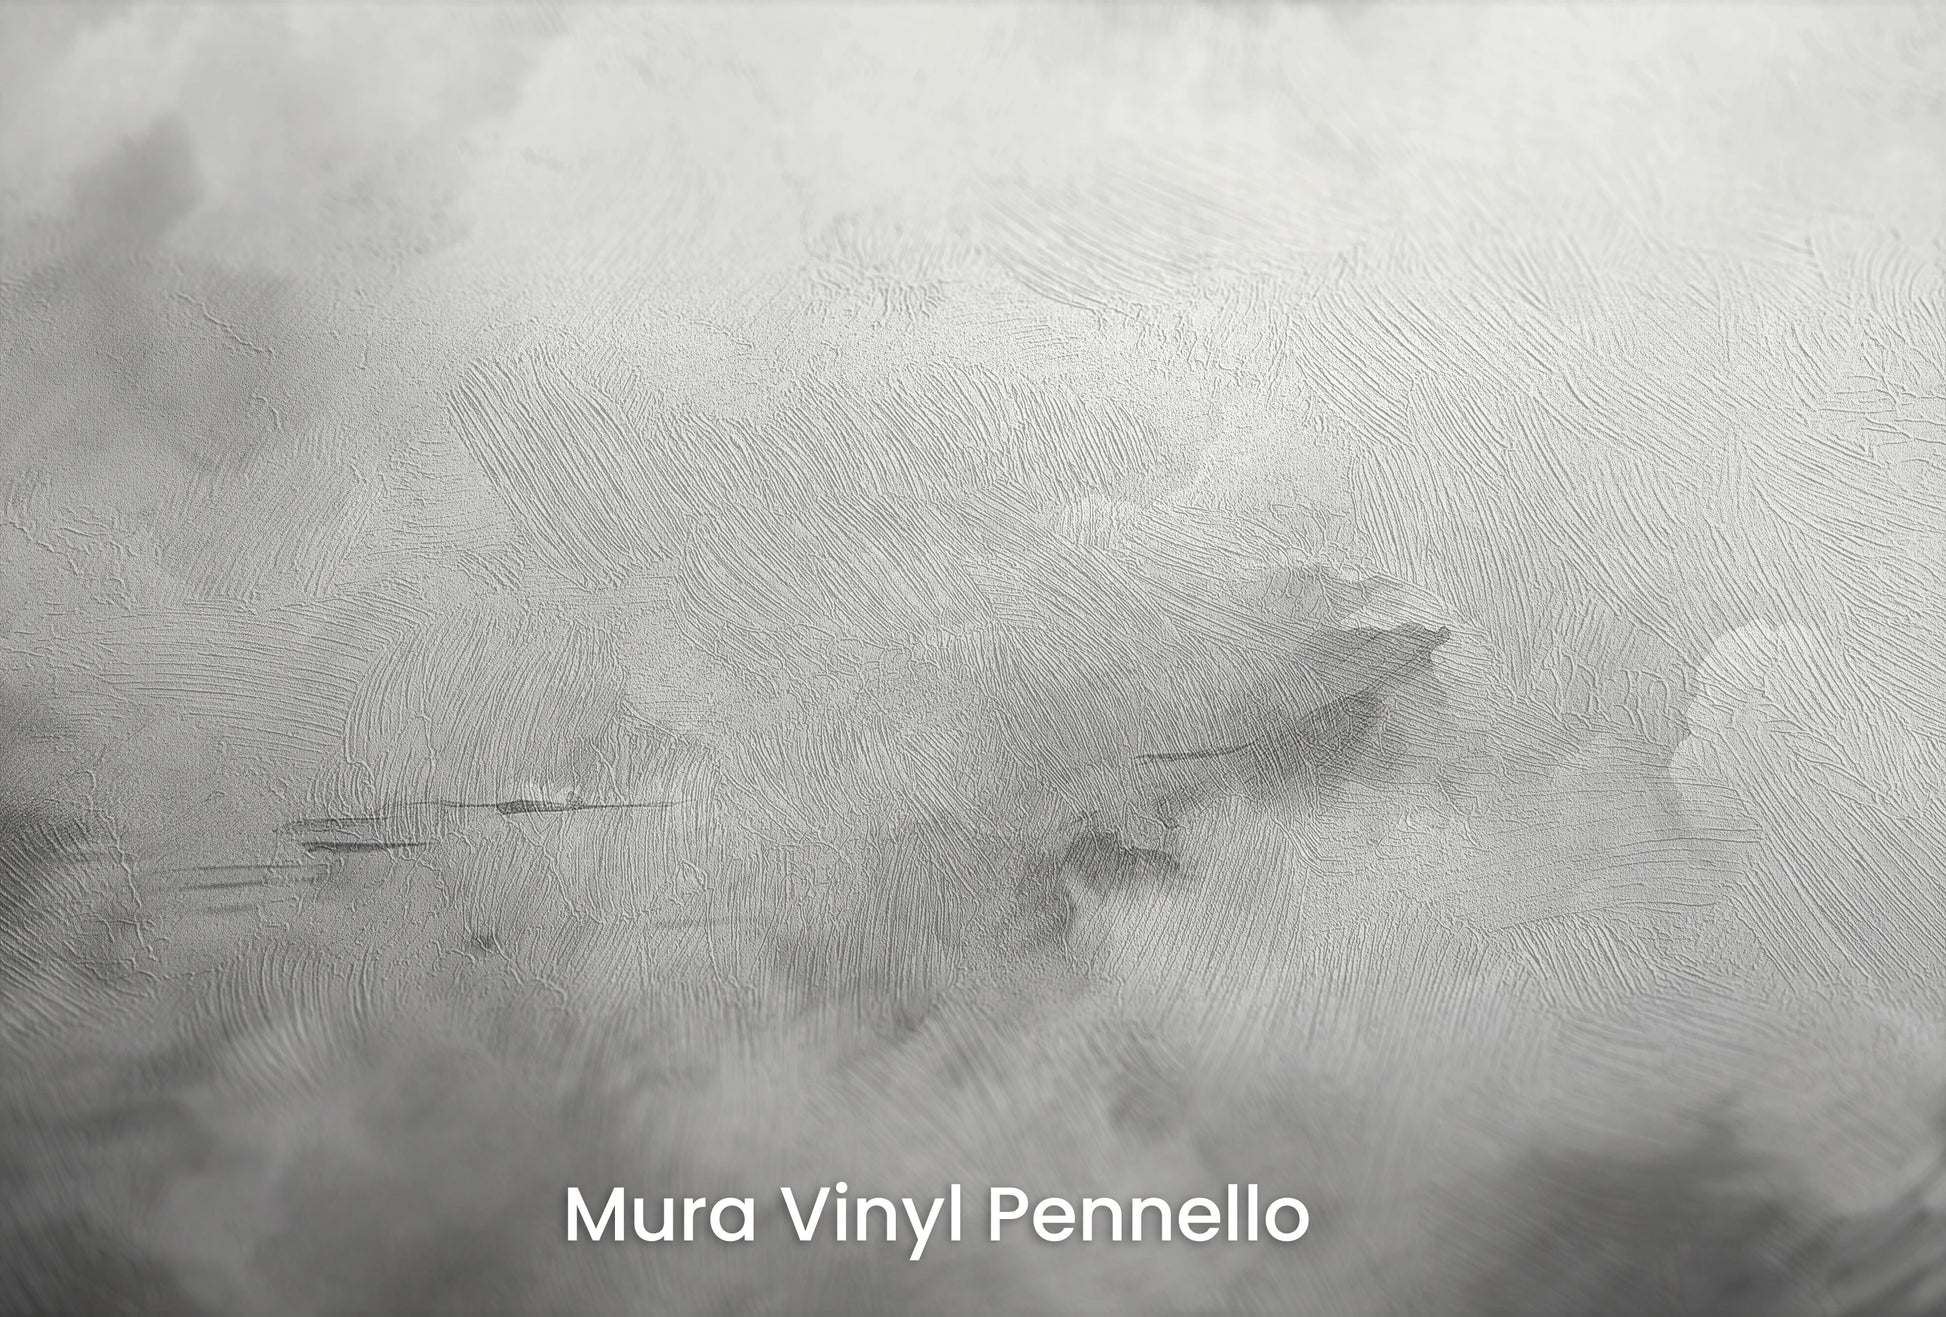 Zbliżenie na artystyczną fototapetę o nazwie Monochrome Whispers na podłożu Mura Vinyl Pennello - faktura pociągnięć pędzla malarskiego.